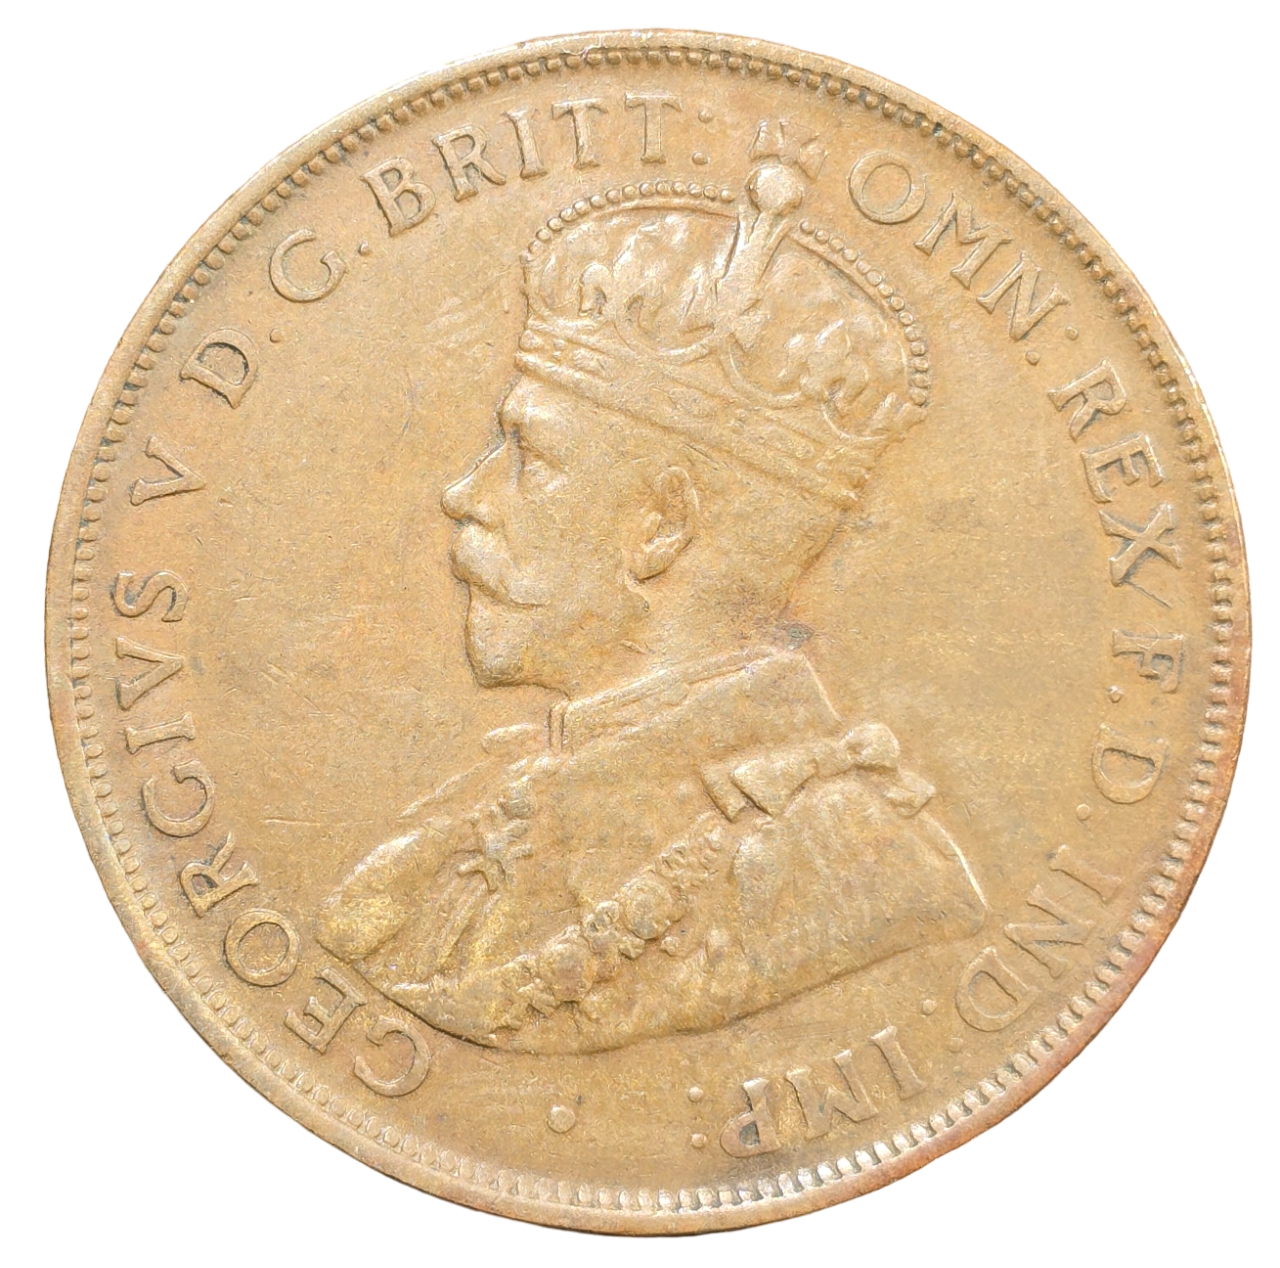 1925 Australian Penny - Fine